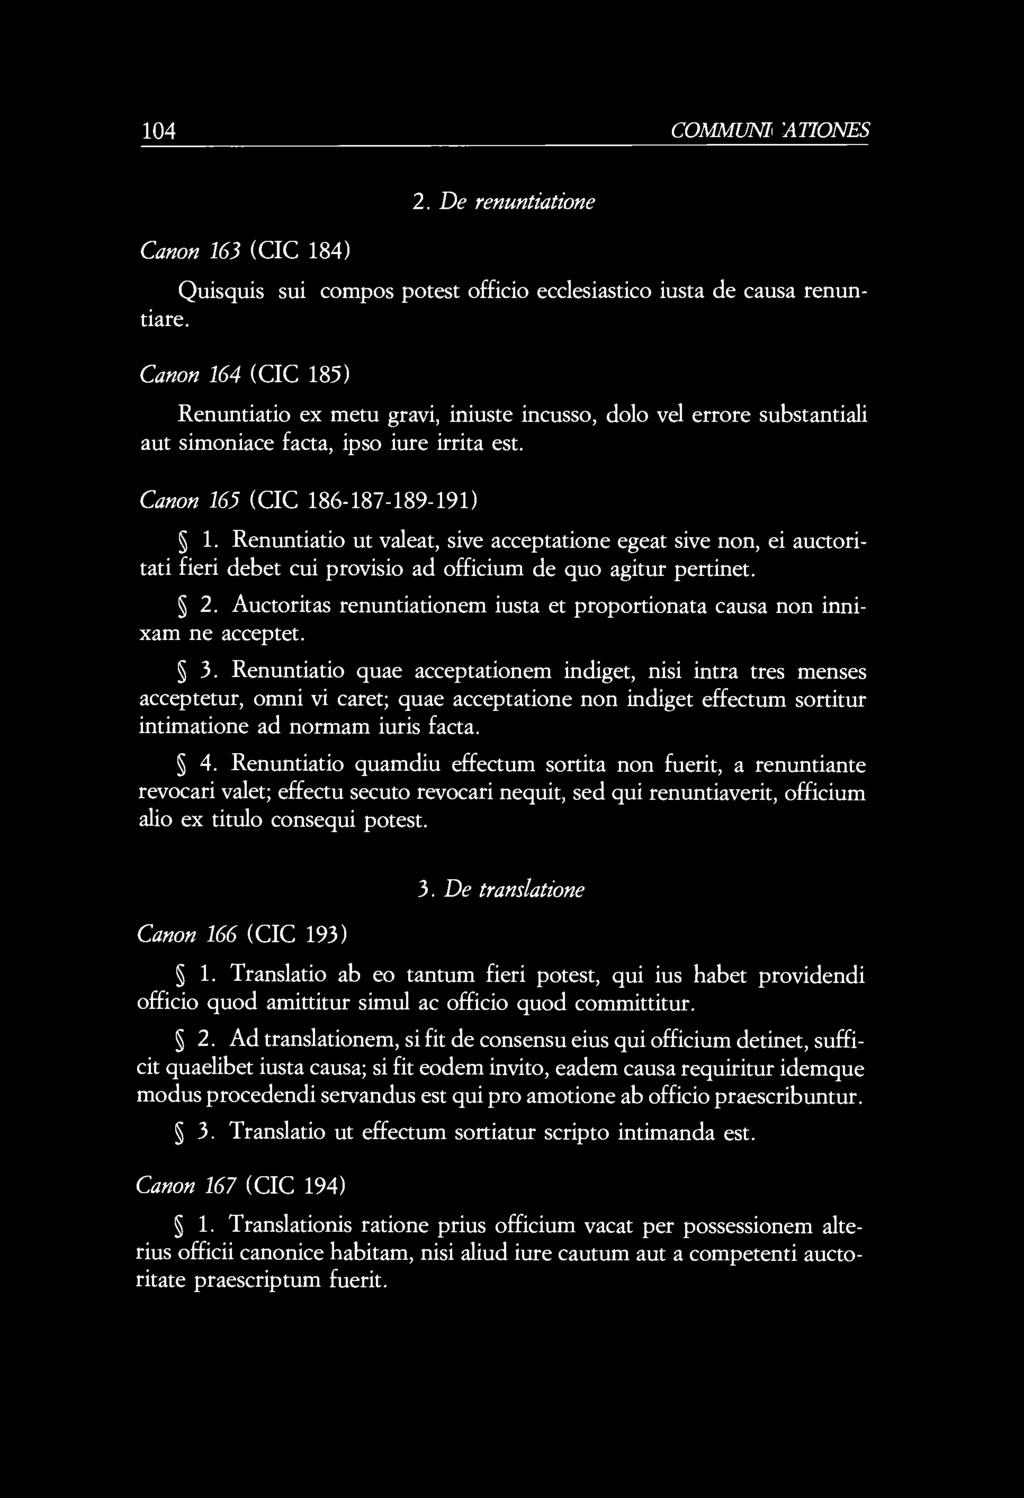 104 COMMUNIO A TIONES Canon 163 (CIC 184) 2. De renuntiatione Quisquis sui compos potest officio ecclesiastico iusta de causa renuntiare.